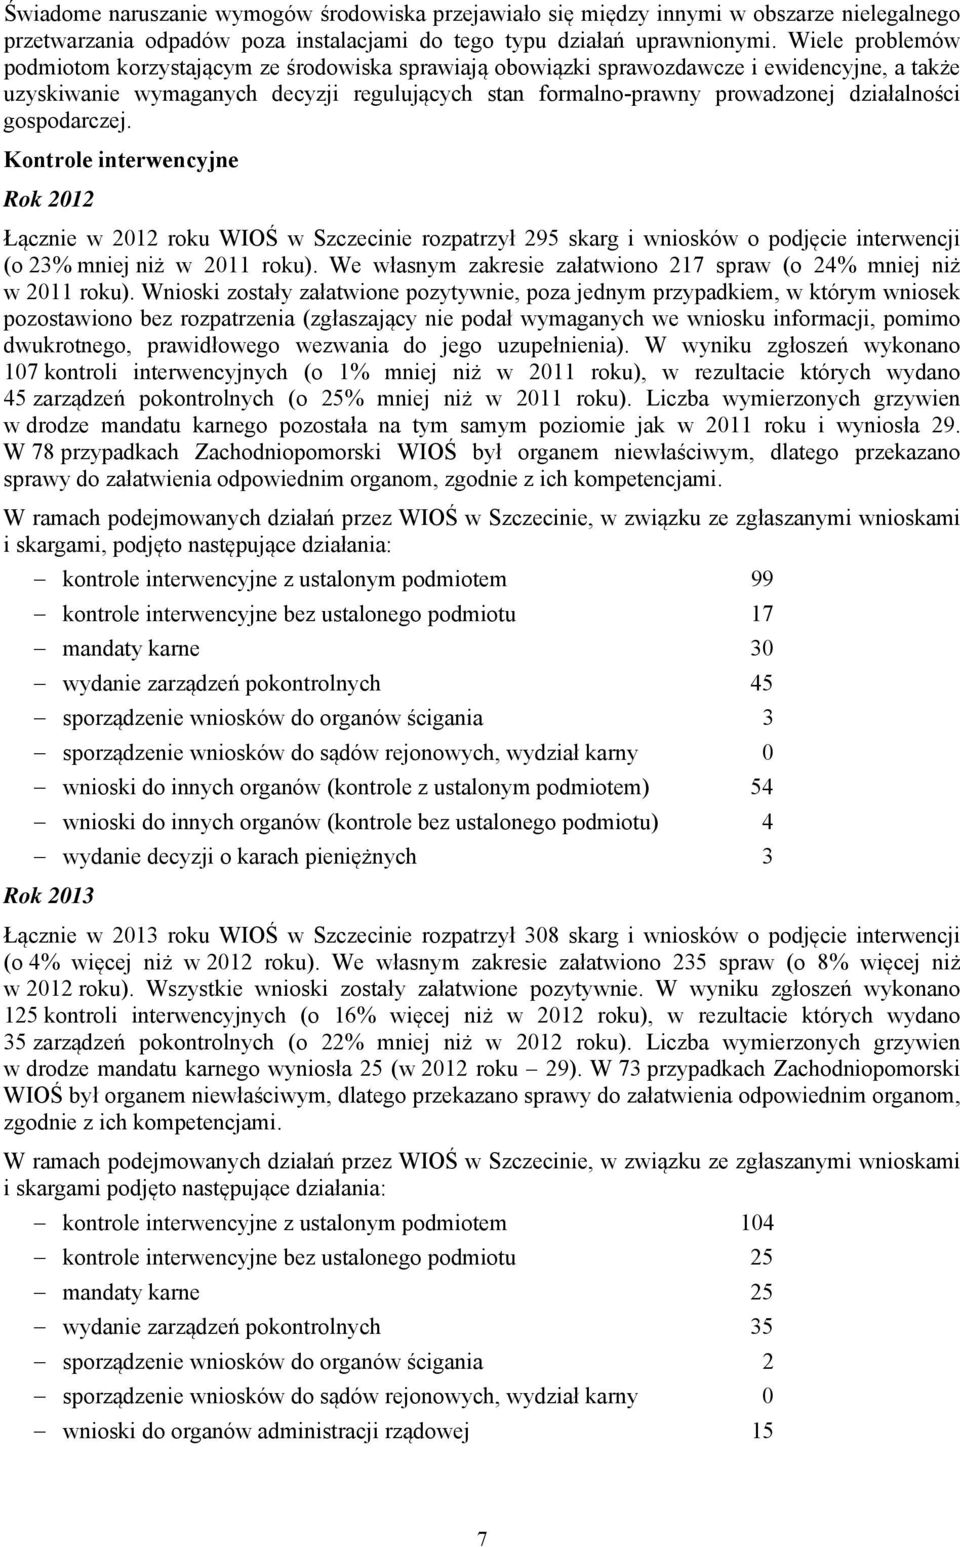 działalności gospodarczej. Kontrole interwencyjne Rok 2012 Łącznie w 2012 roku WIOŚ w Szczecinie rozpatrzył 295 skarg i wniosków o podjęcie interwencji (o 23% mniej niż w 2011 roku).